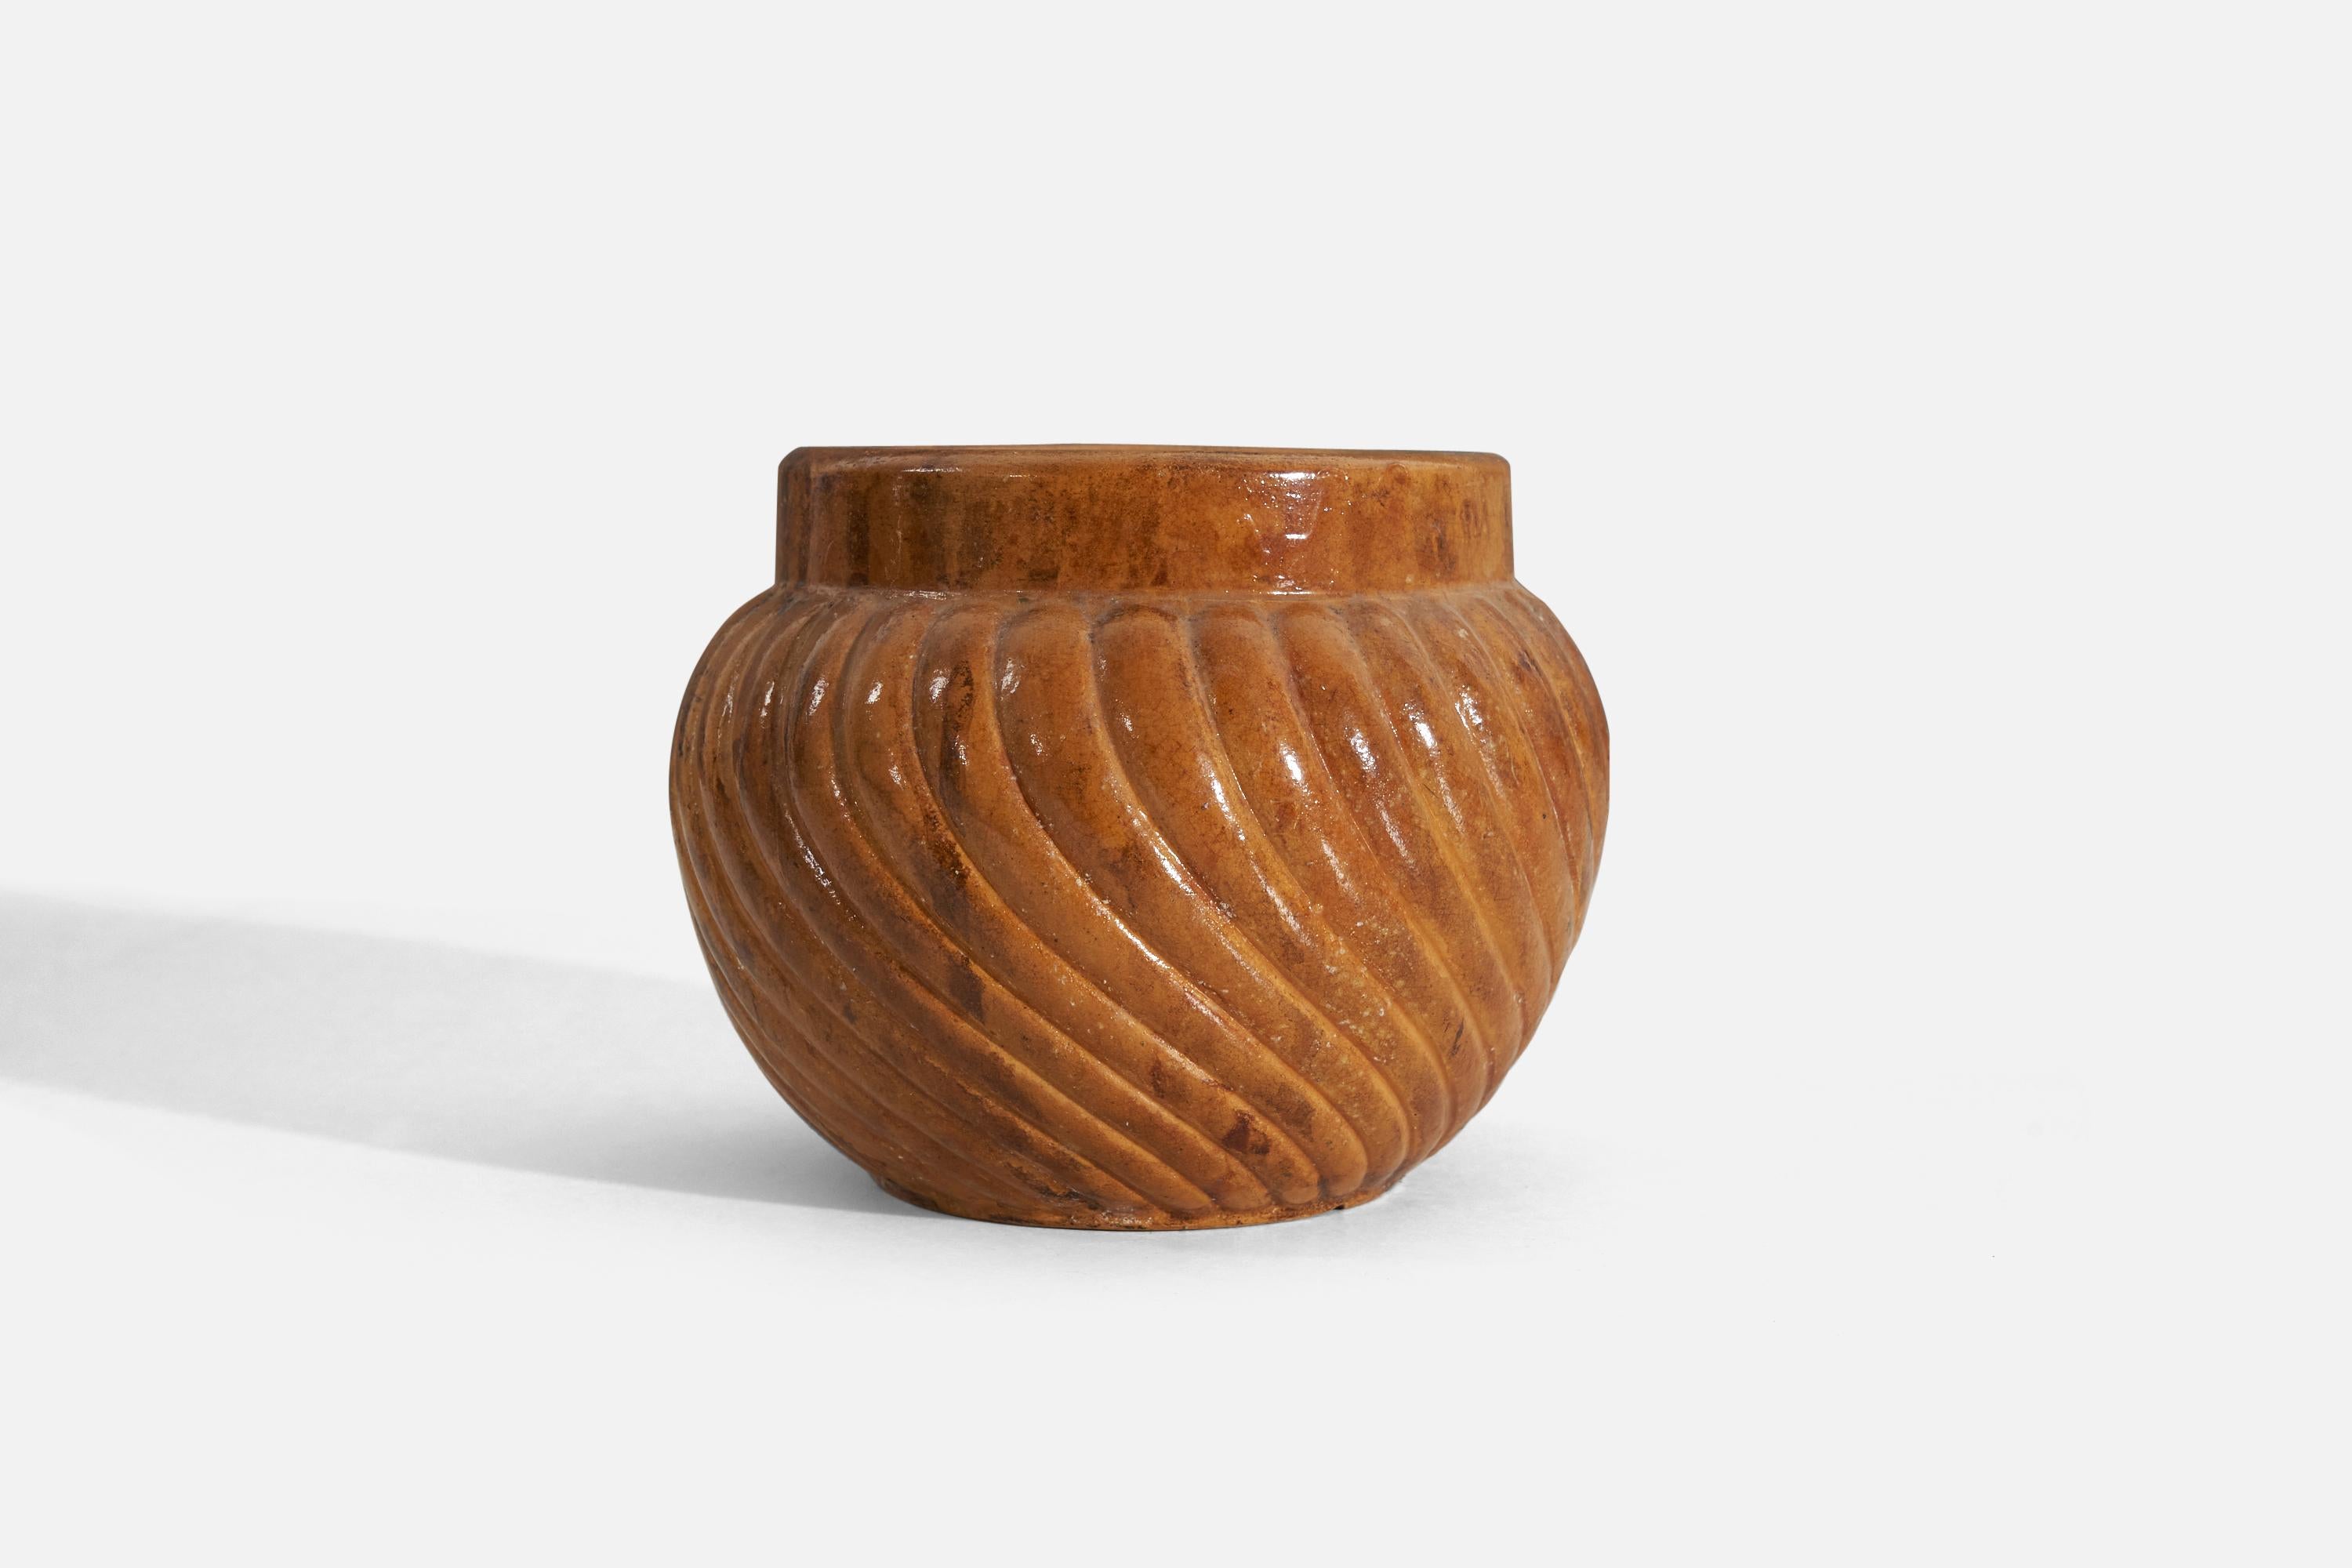 Scandinavian Modern Höganas Keramik, Vase, Orange-Glazed Stoneware, Höganäs, Sweden, 1940s For Sale